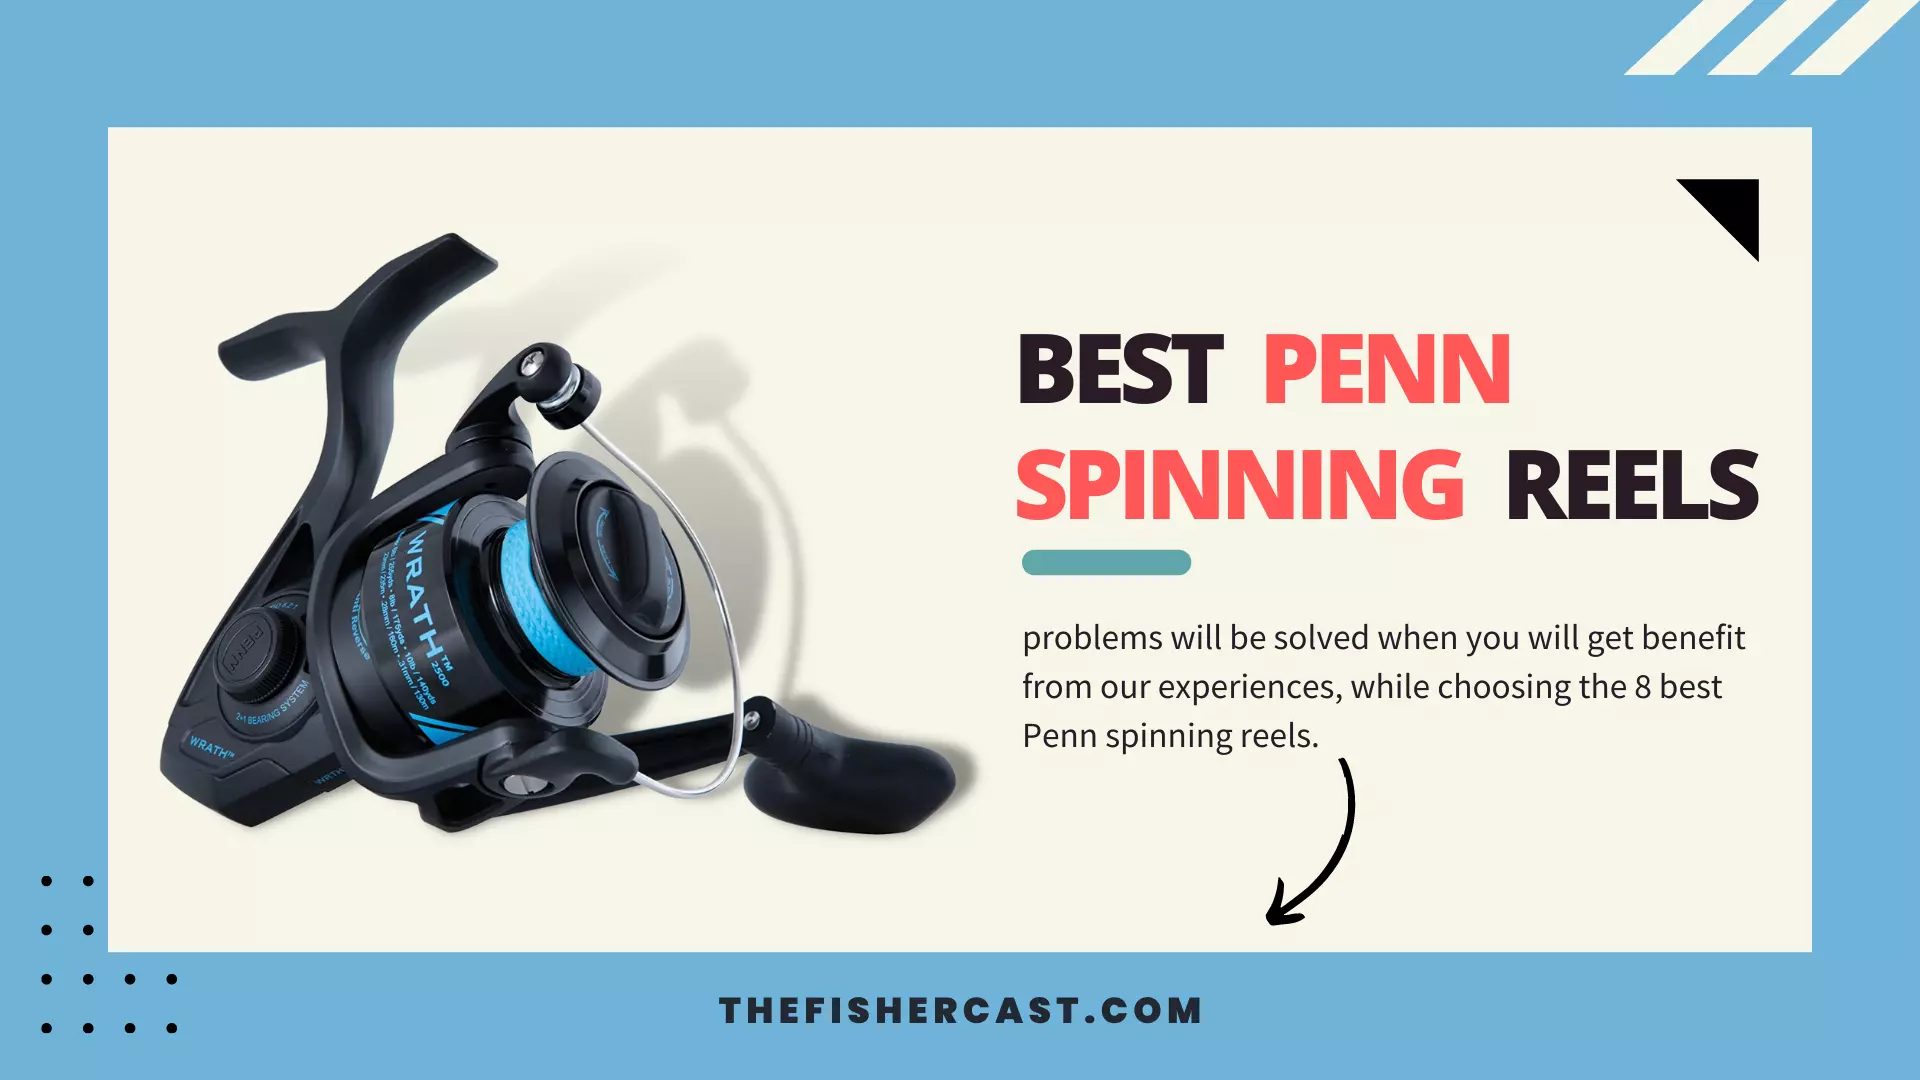 Best Penn Spinning Reels